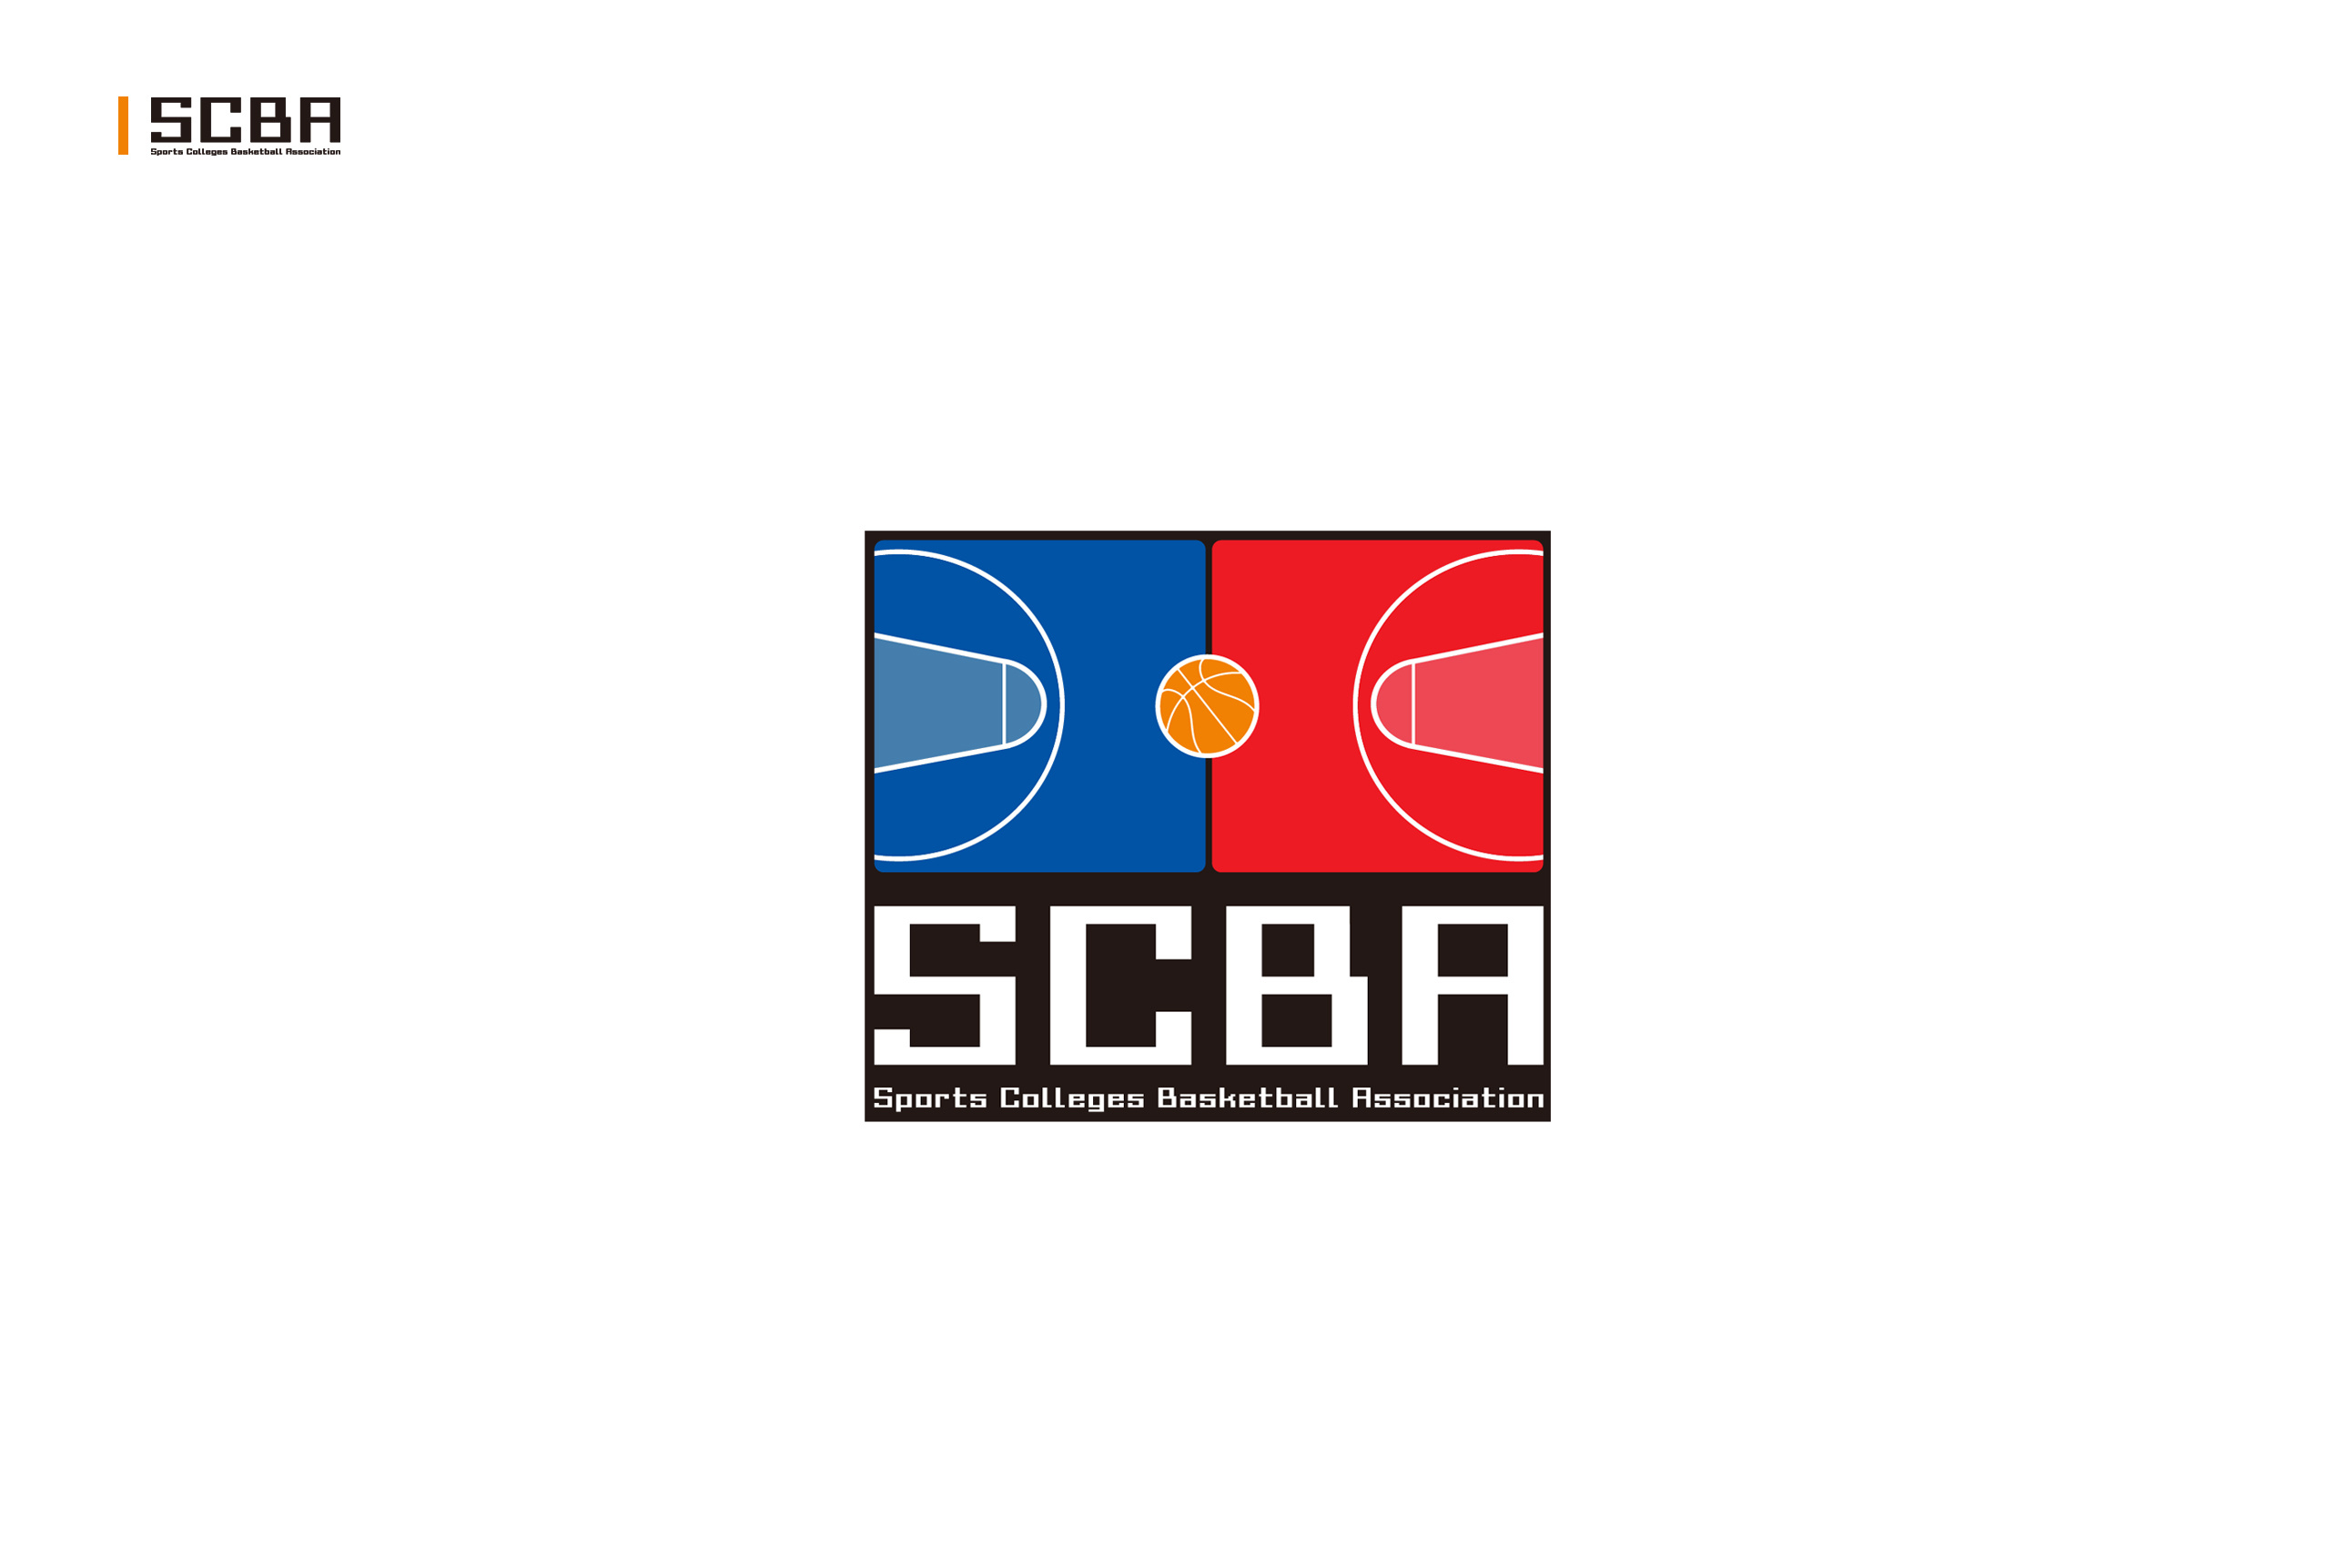 SCBA标志与吉祥物设计提案